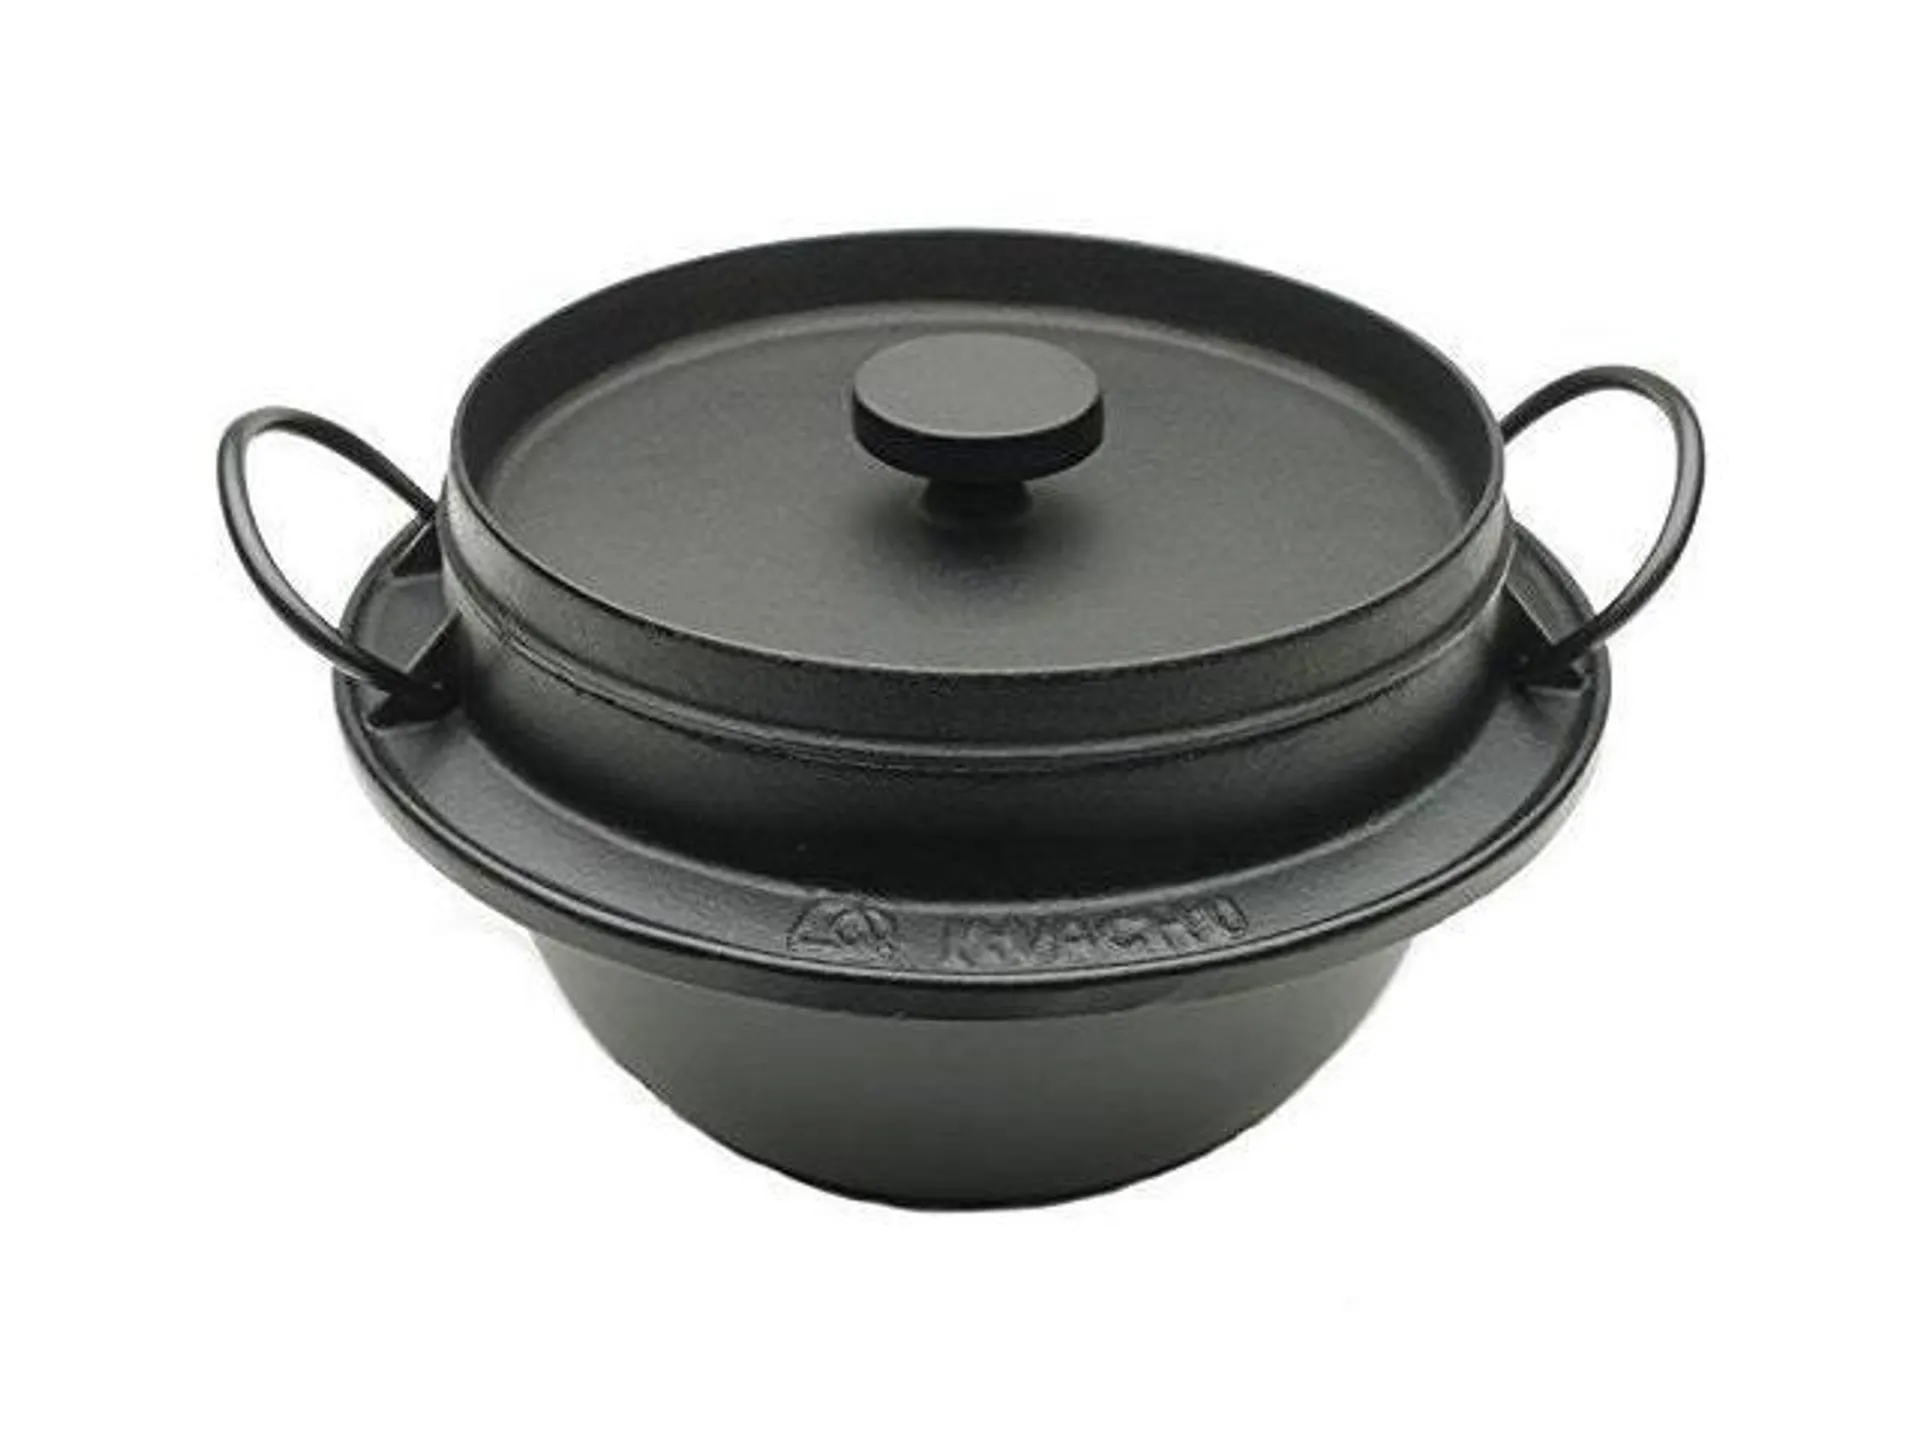 iwachu 410720 japanese cast iron gohan nabe rice cooker, black